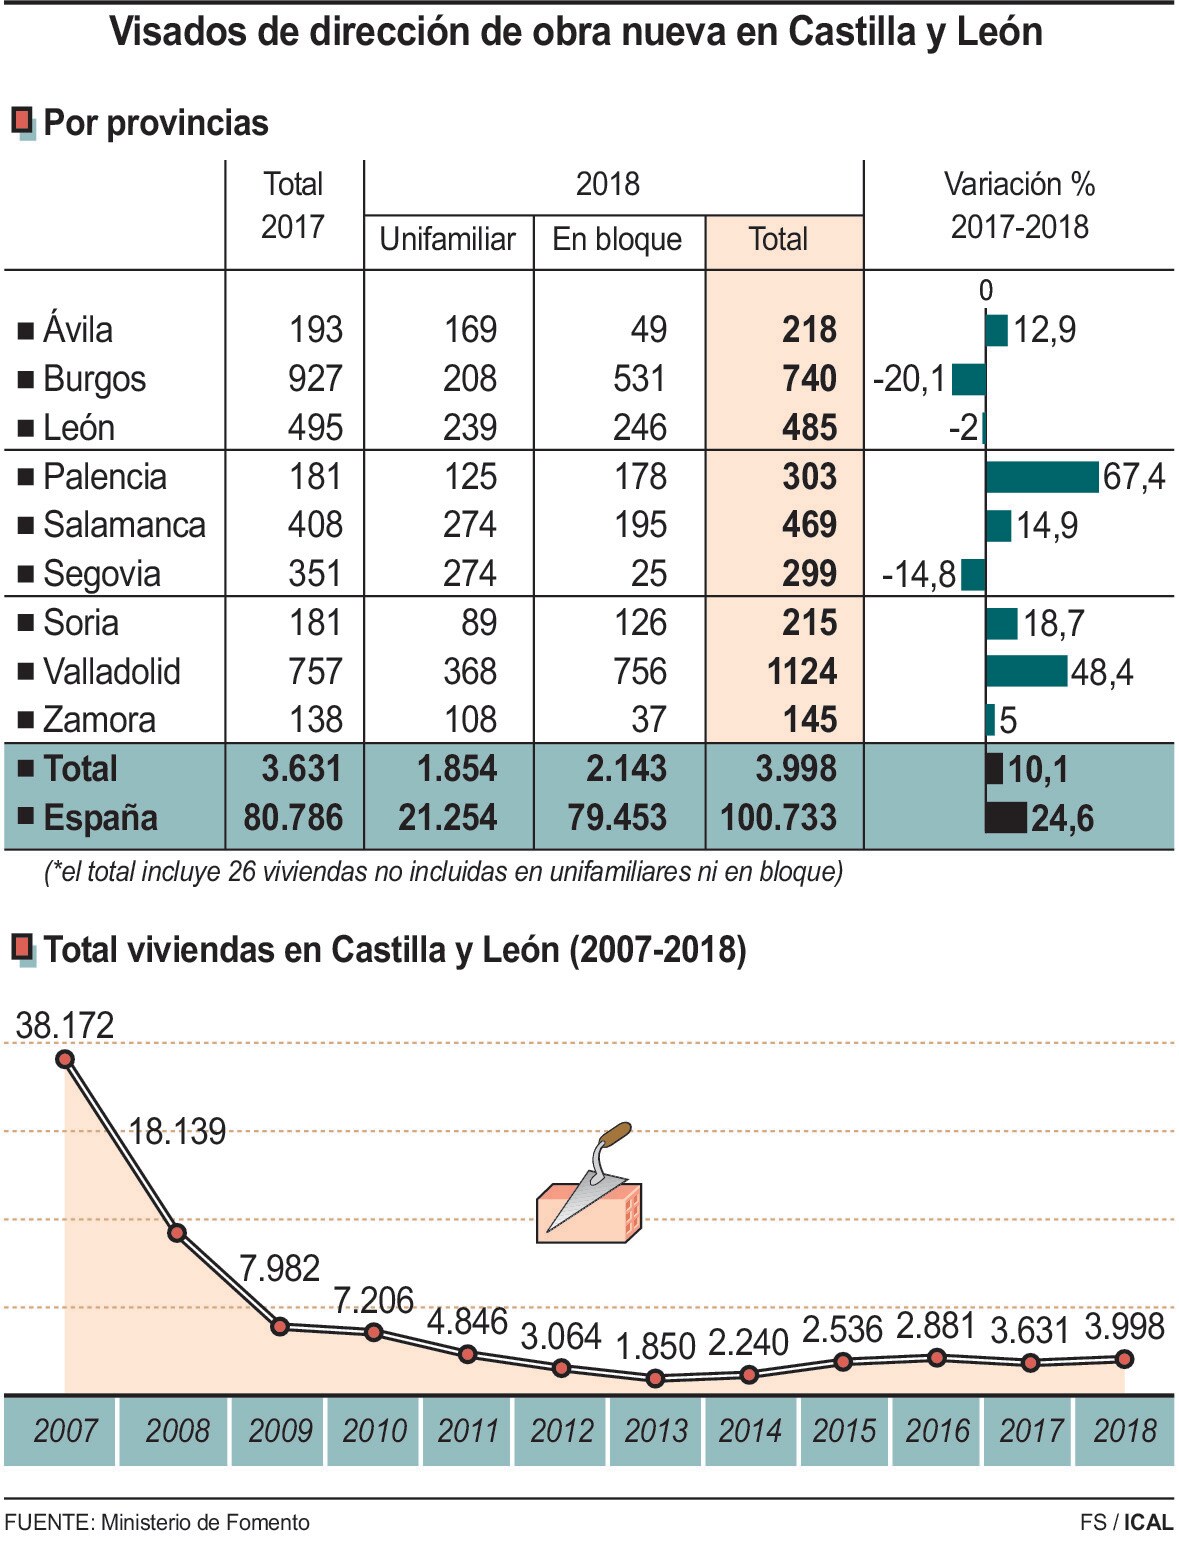 Visados de dirección de obra nueva en Castilla y León